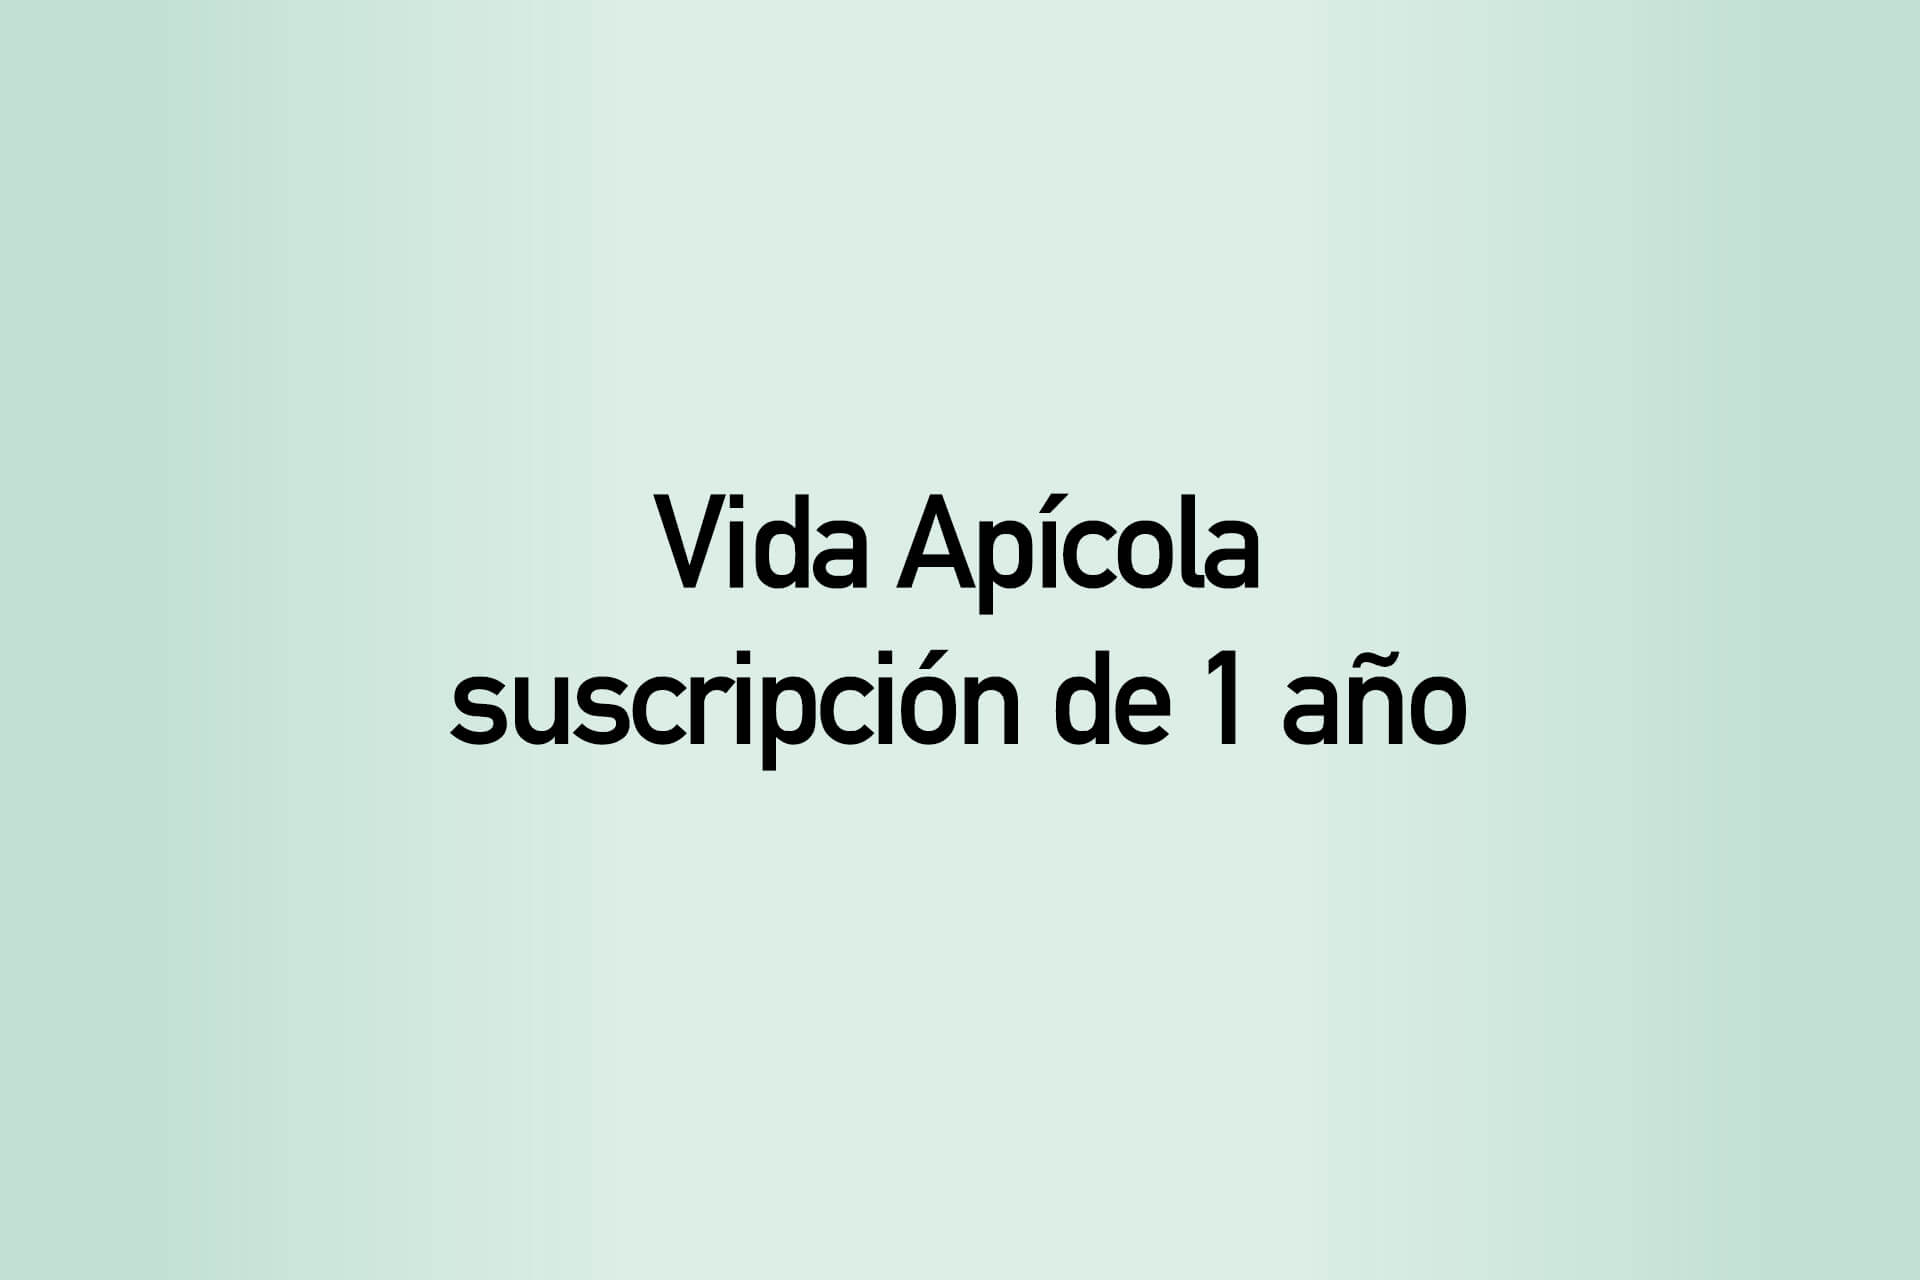 Subscription 1 year, Vida Apícola